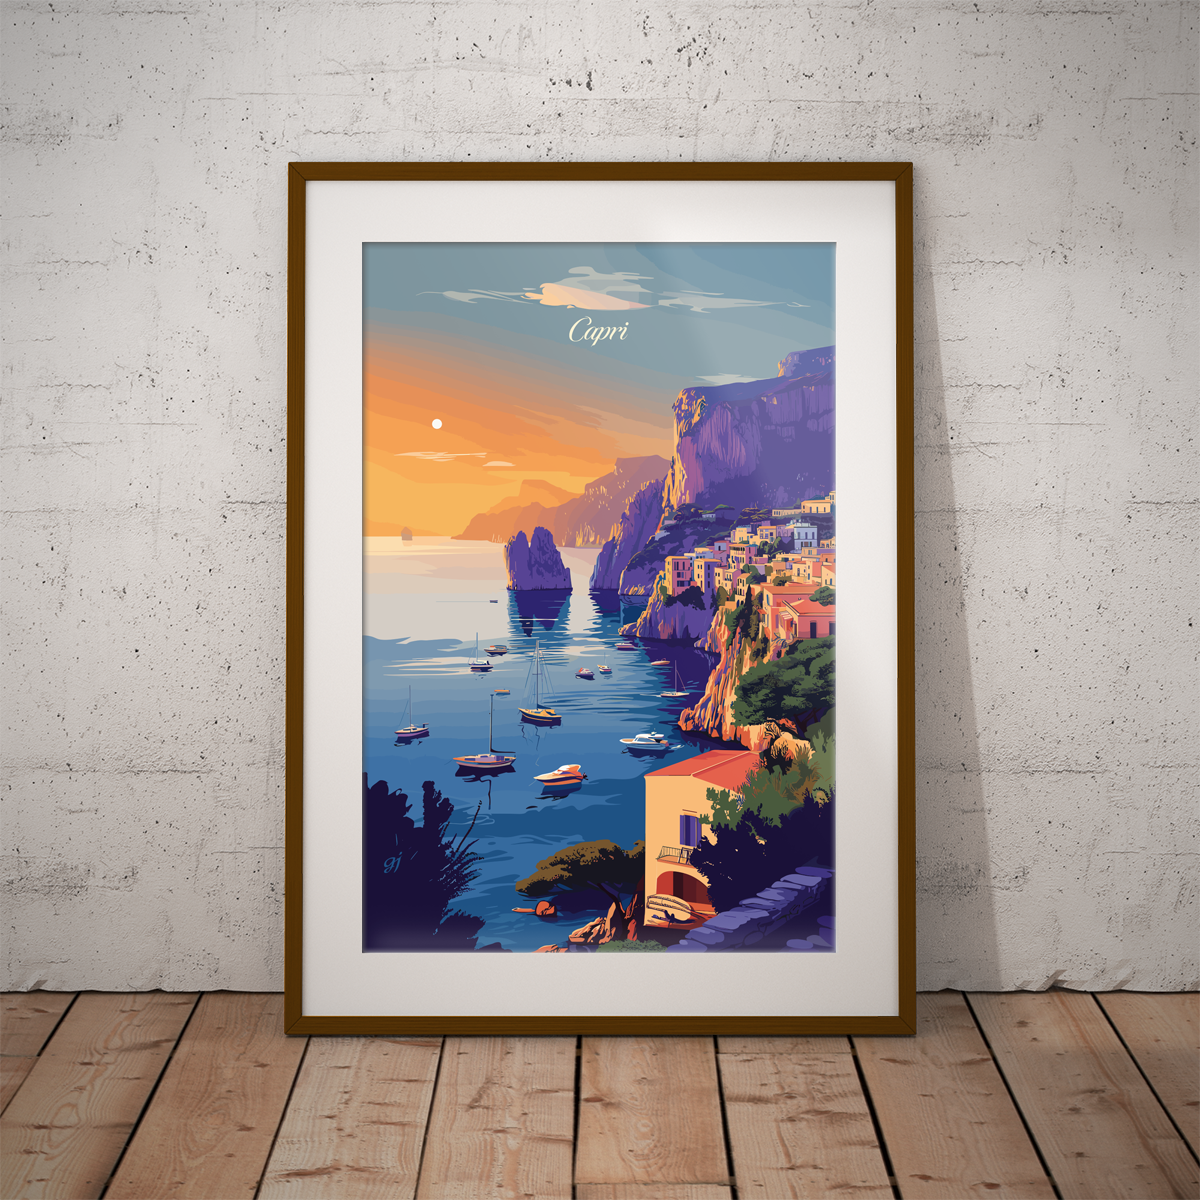 Capri - Rocks poster by bon voyage design